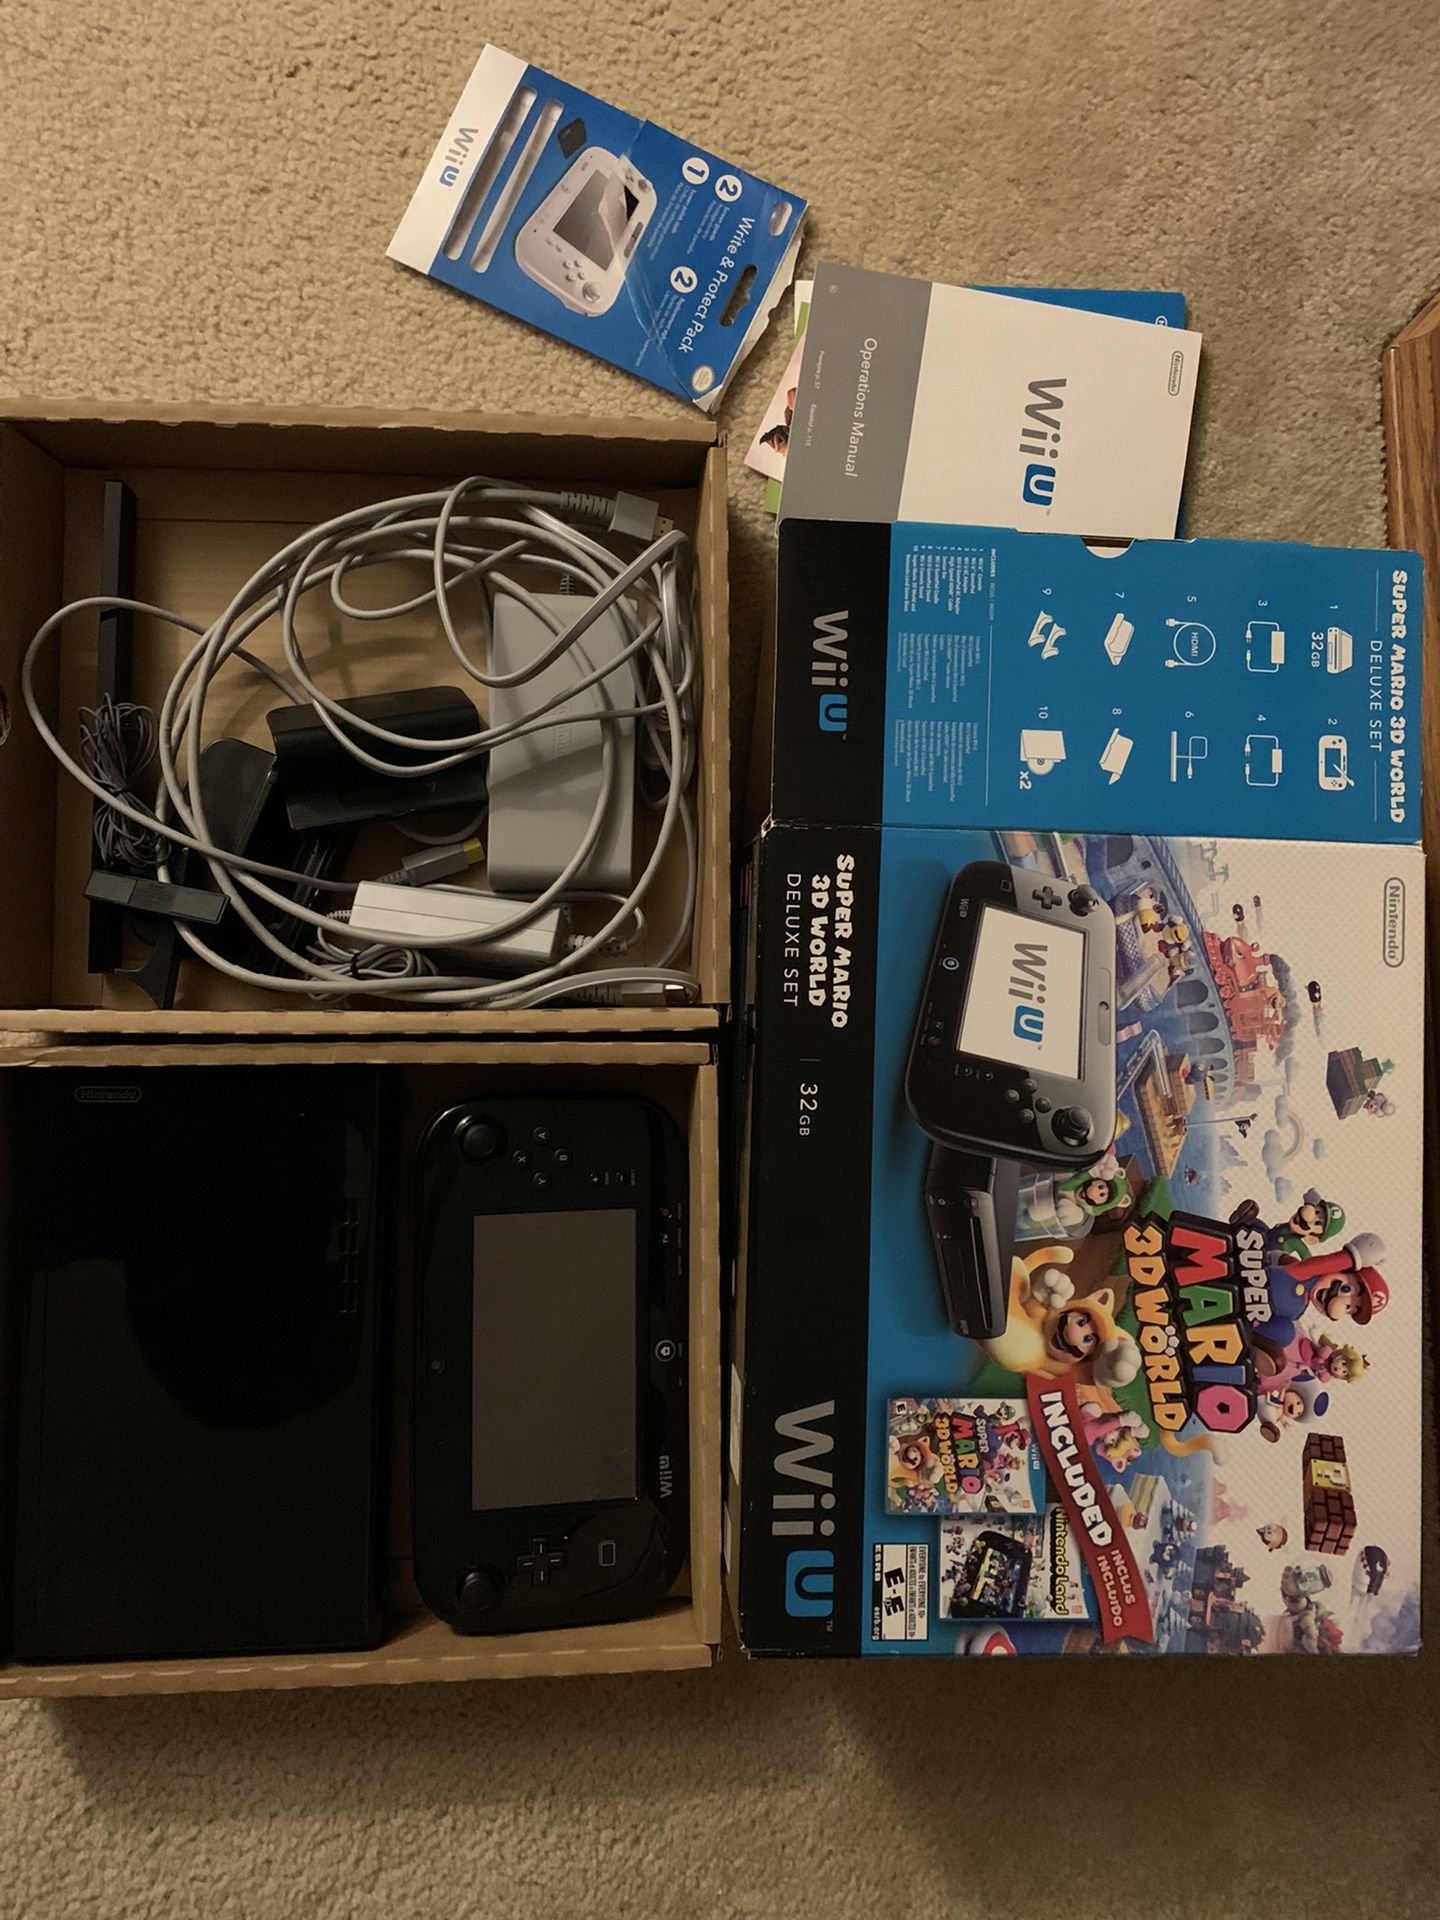 Wii U (32GB) plus 11 Games